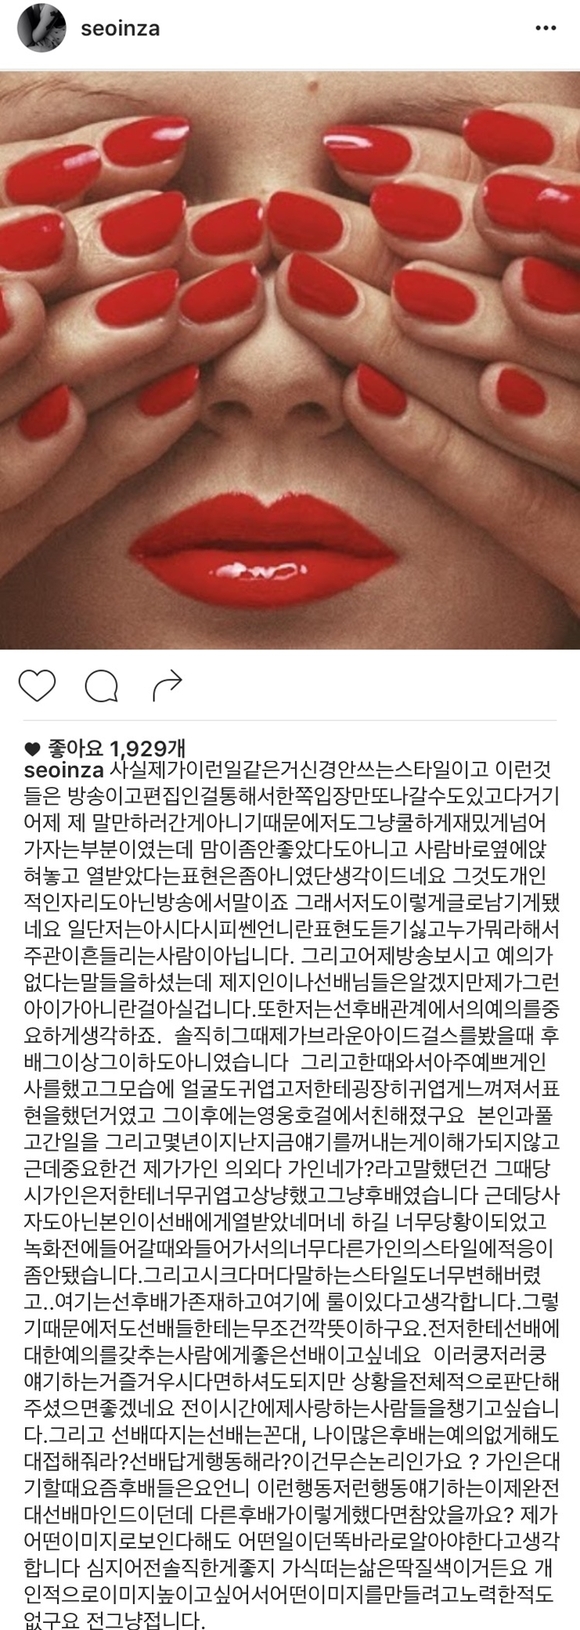 서인영, '라디오스타' 논란 SNS 심경글… 